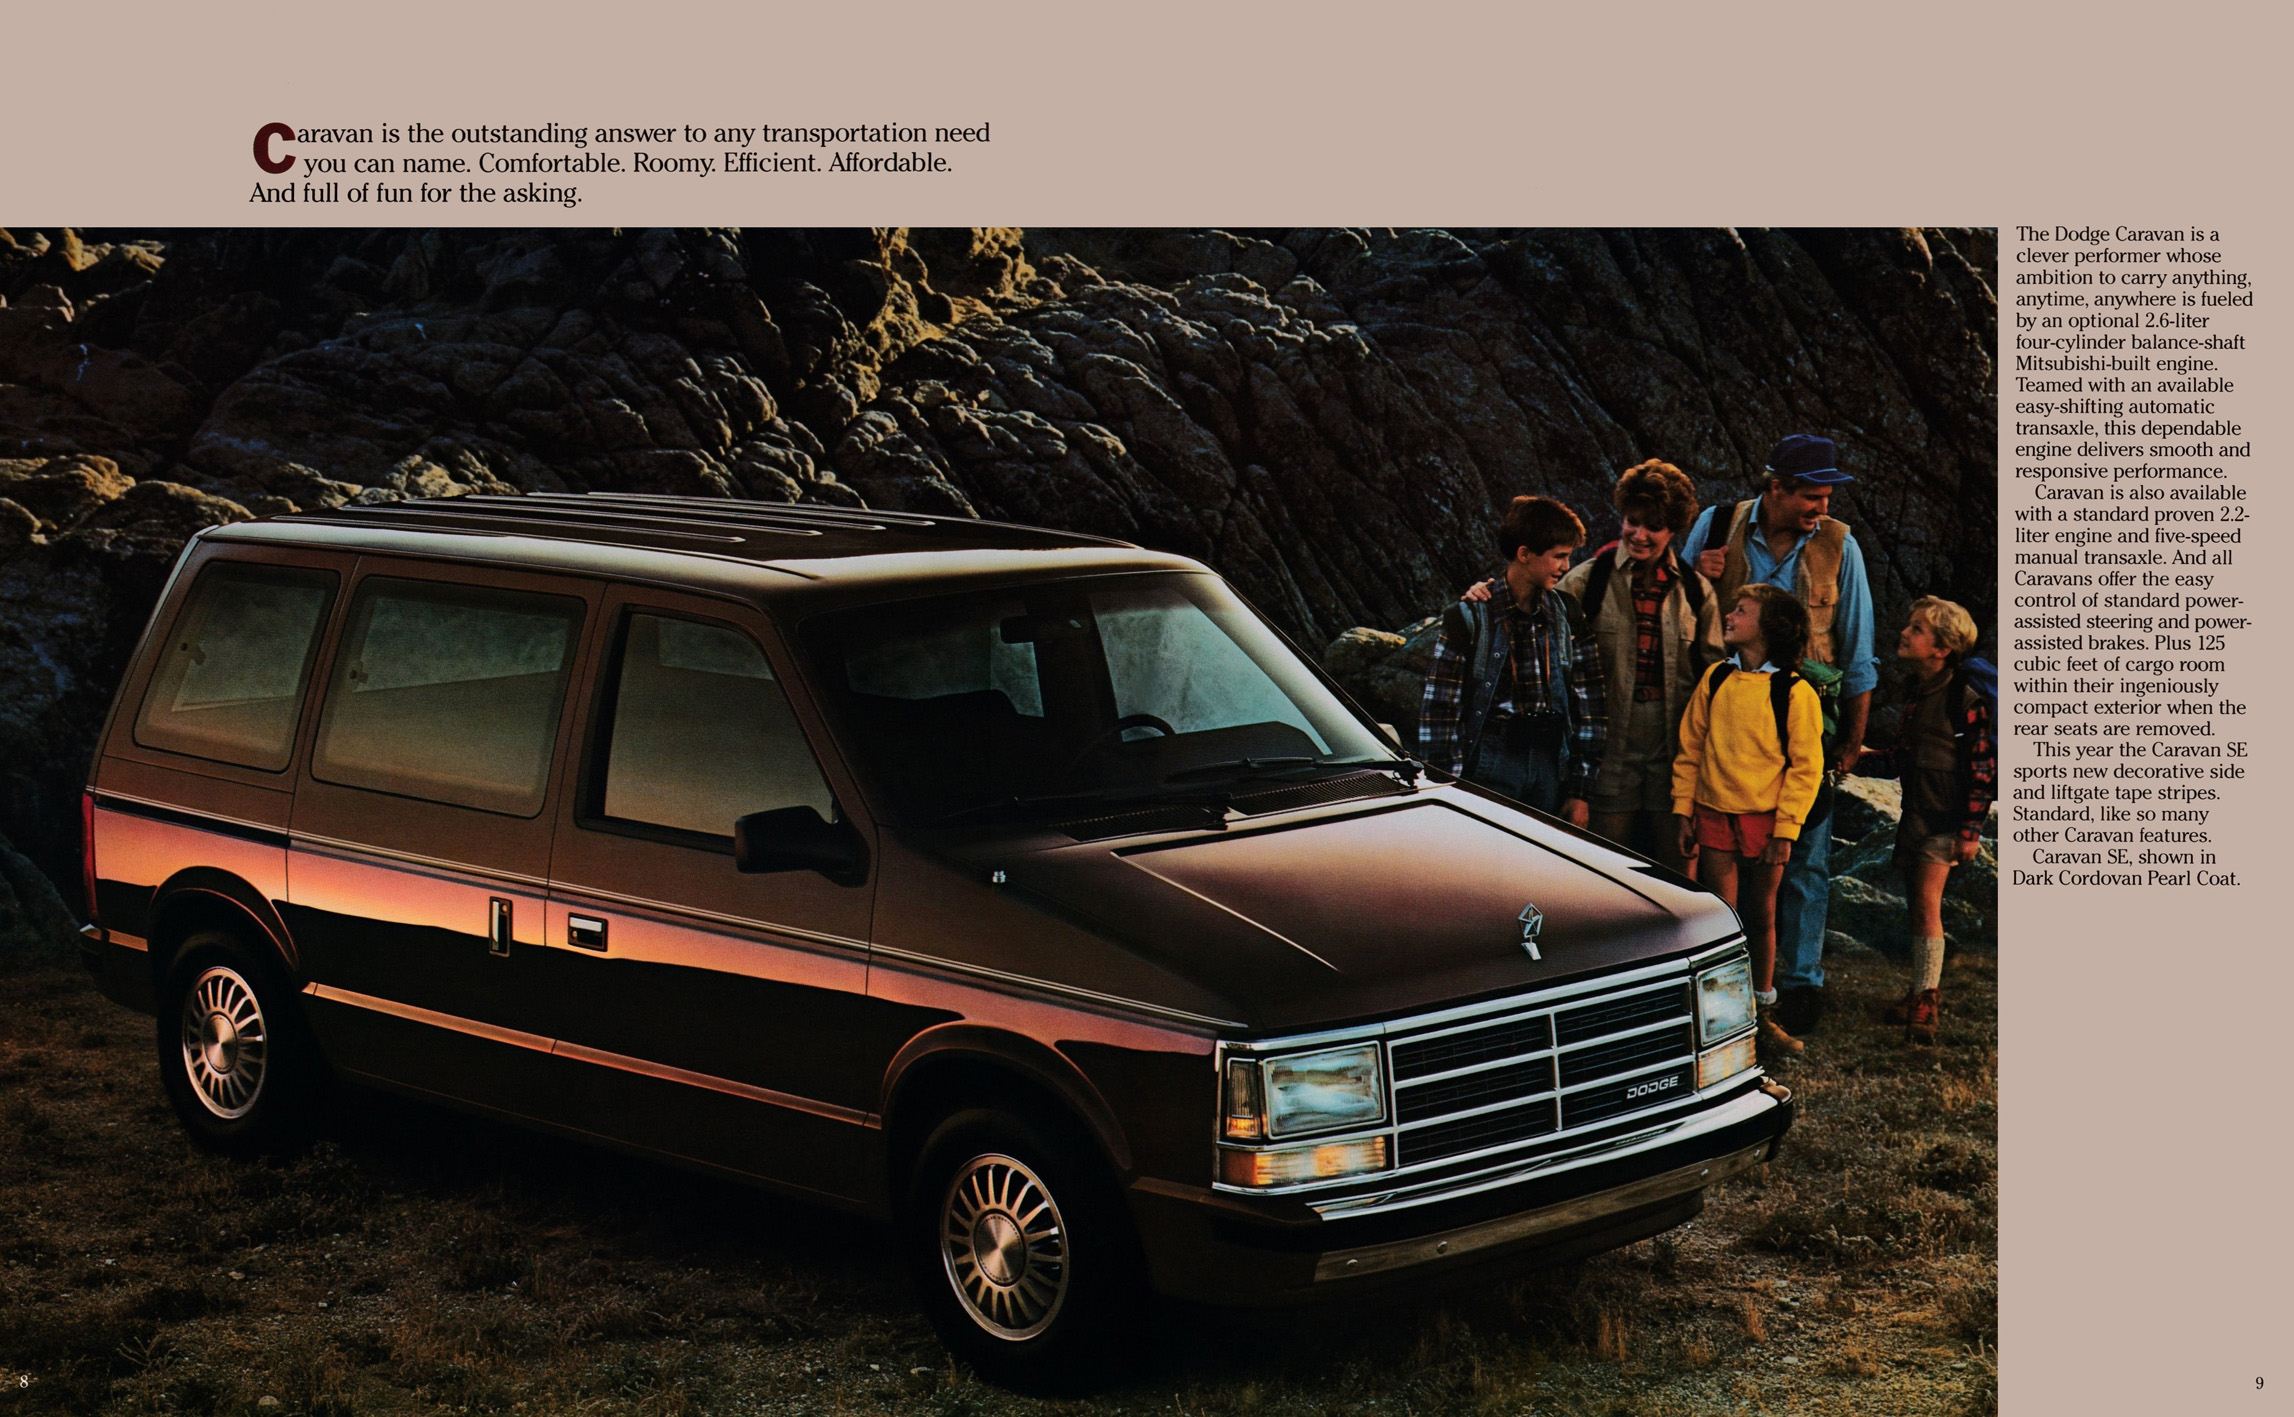 1987 Dodge Caravan Brochure 08-09